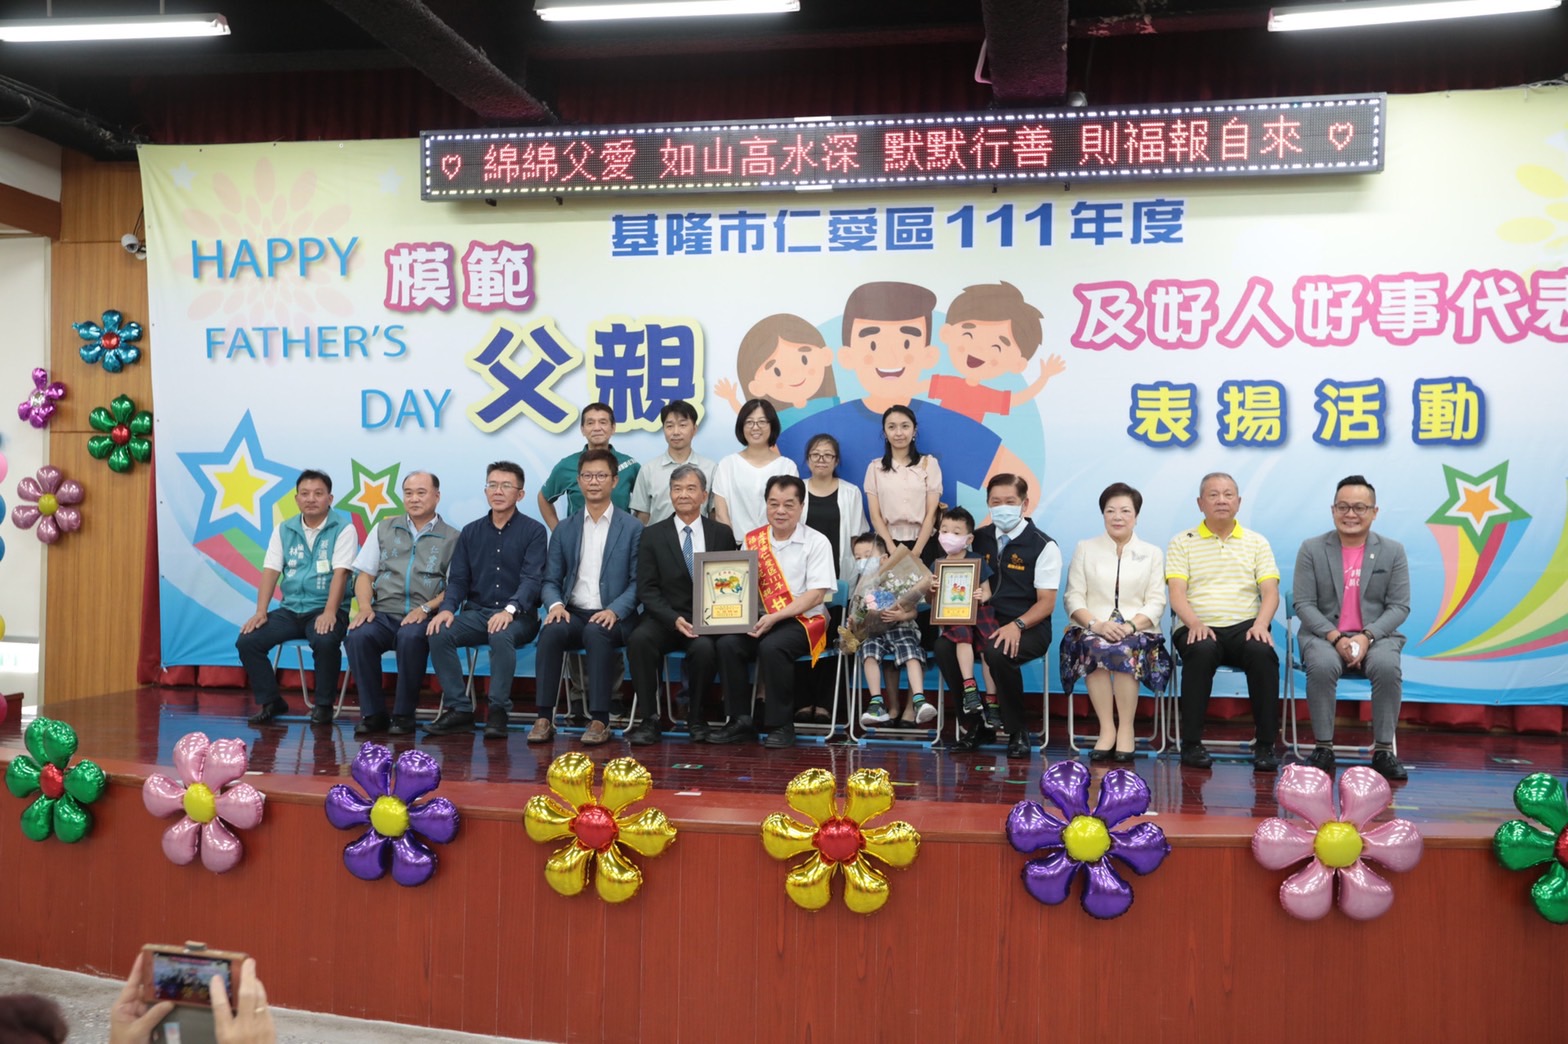 副市長林永發表揚仁愛區模範父親及好人好事代表 (1)